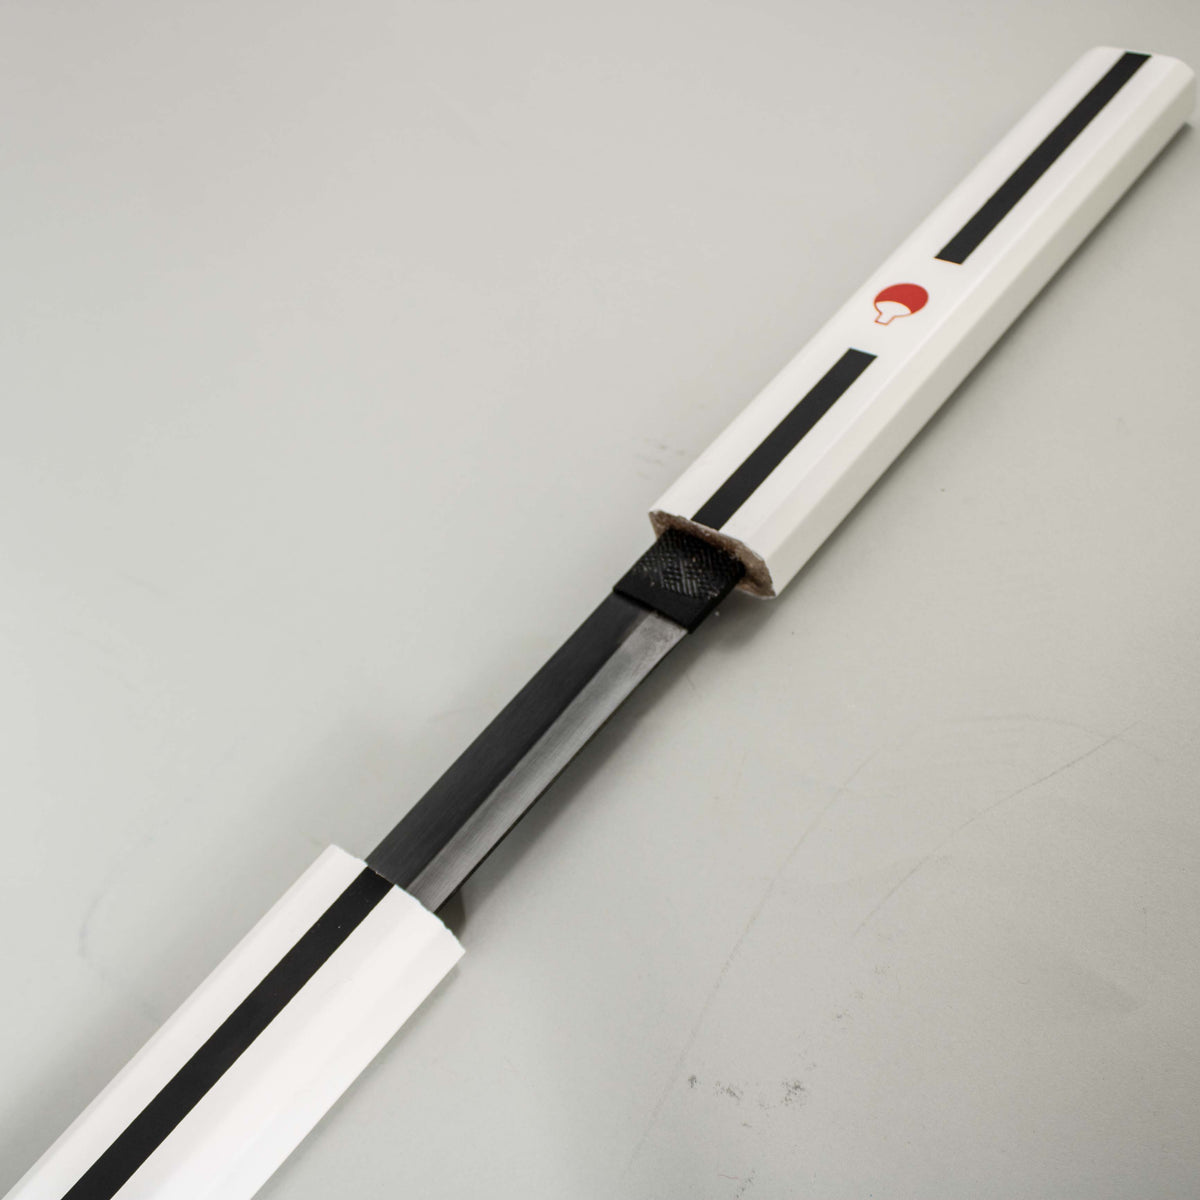 naruto shippuden sasuke sword